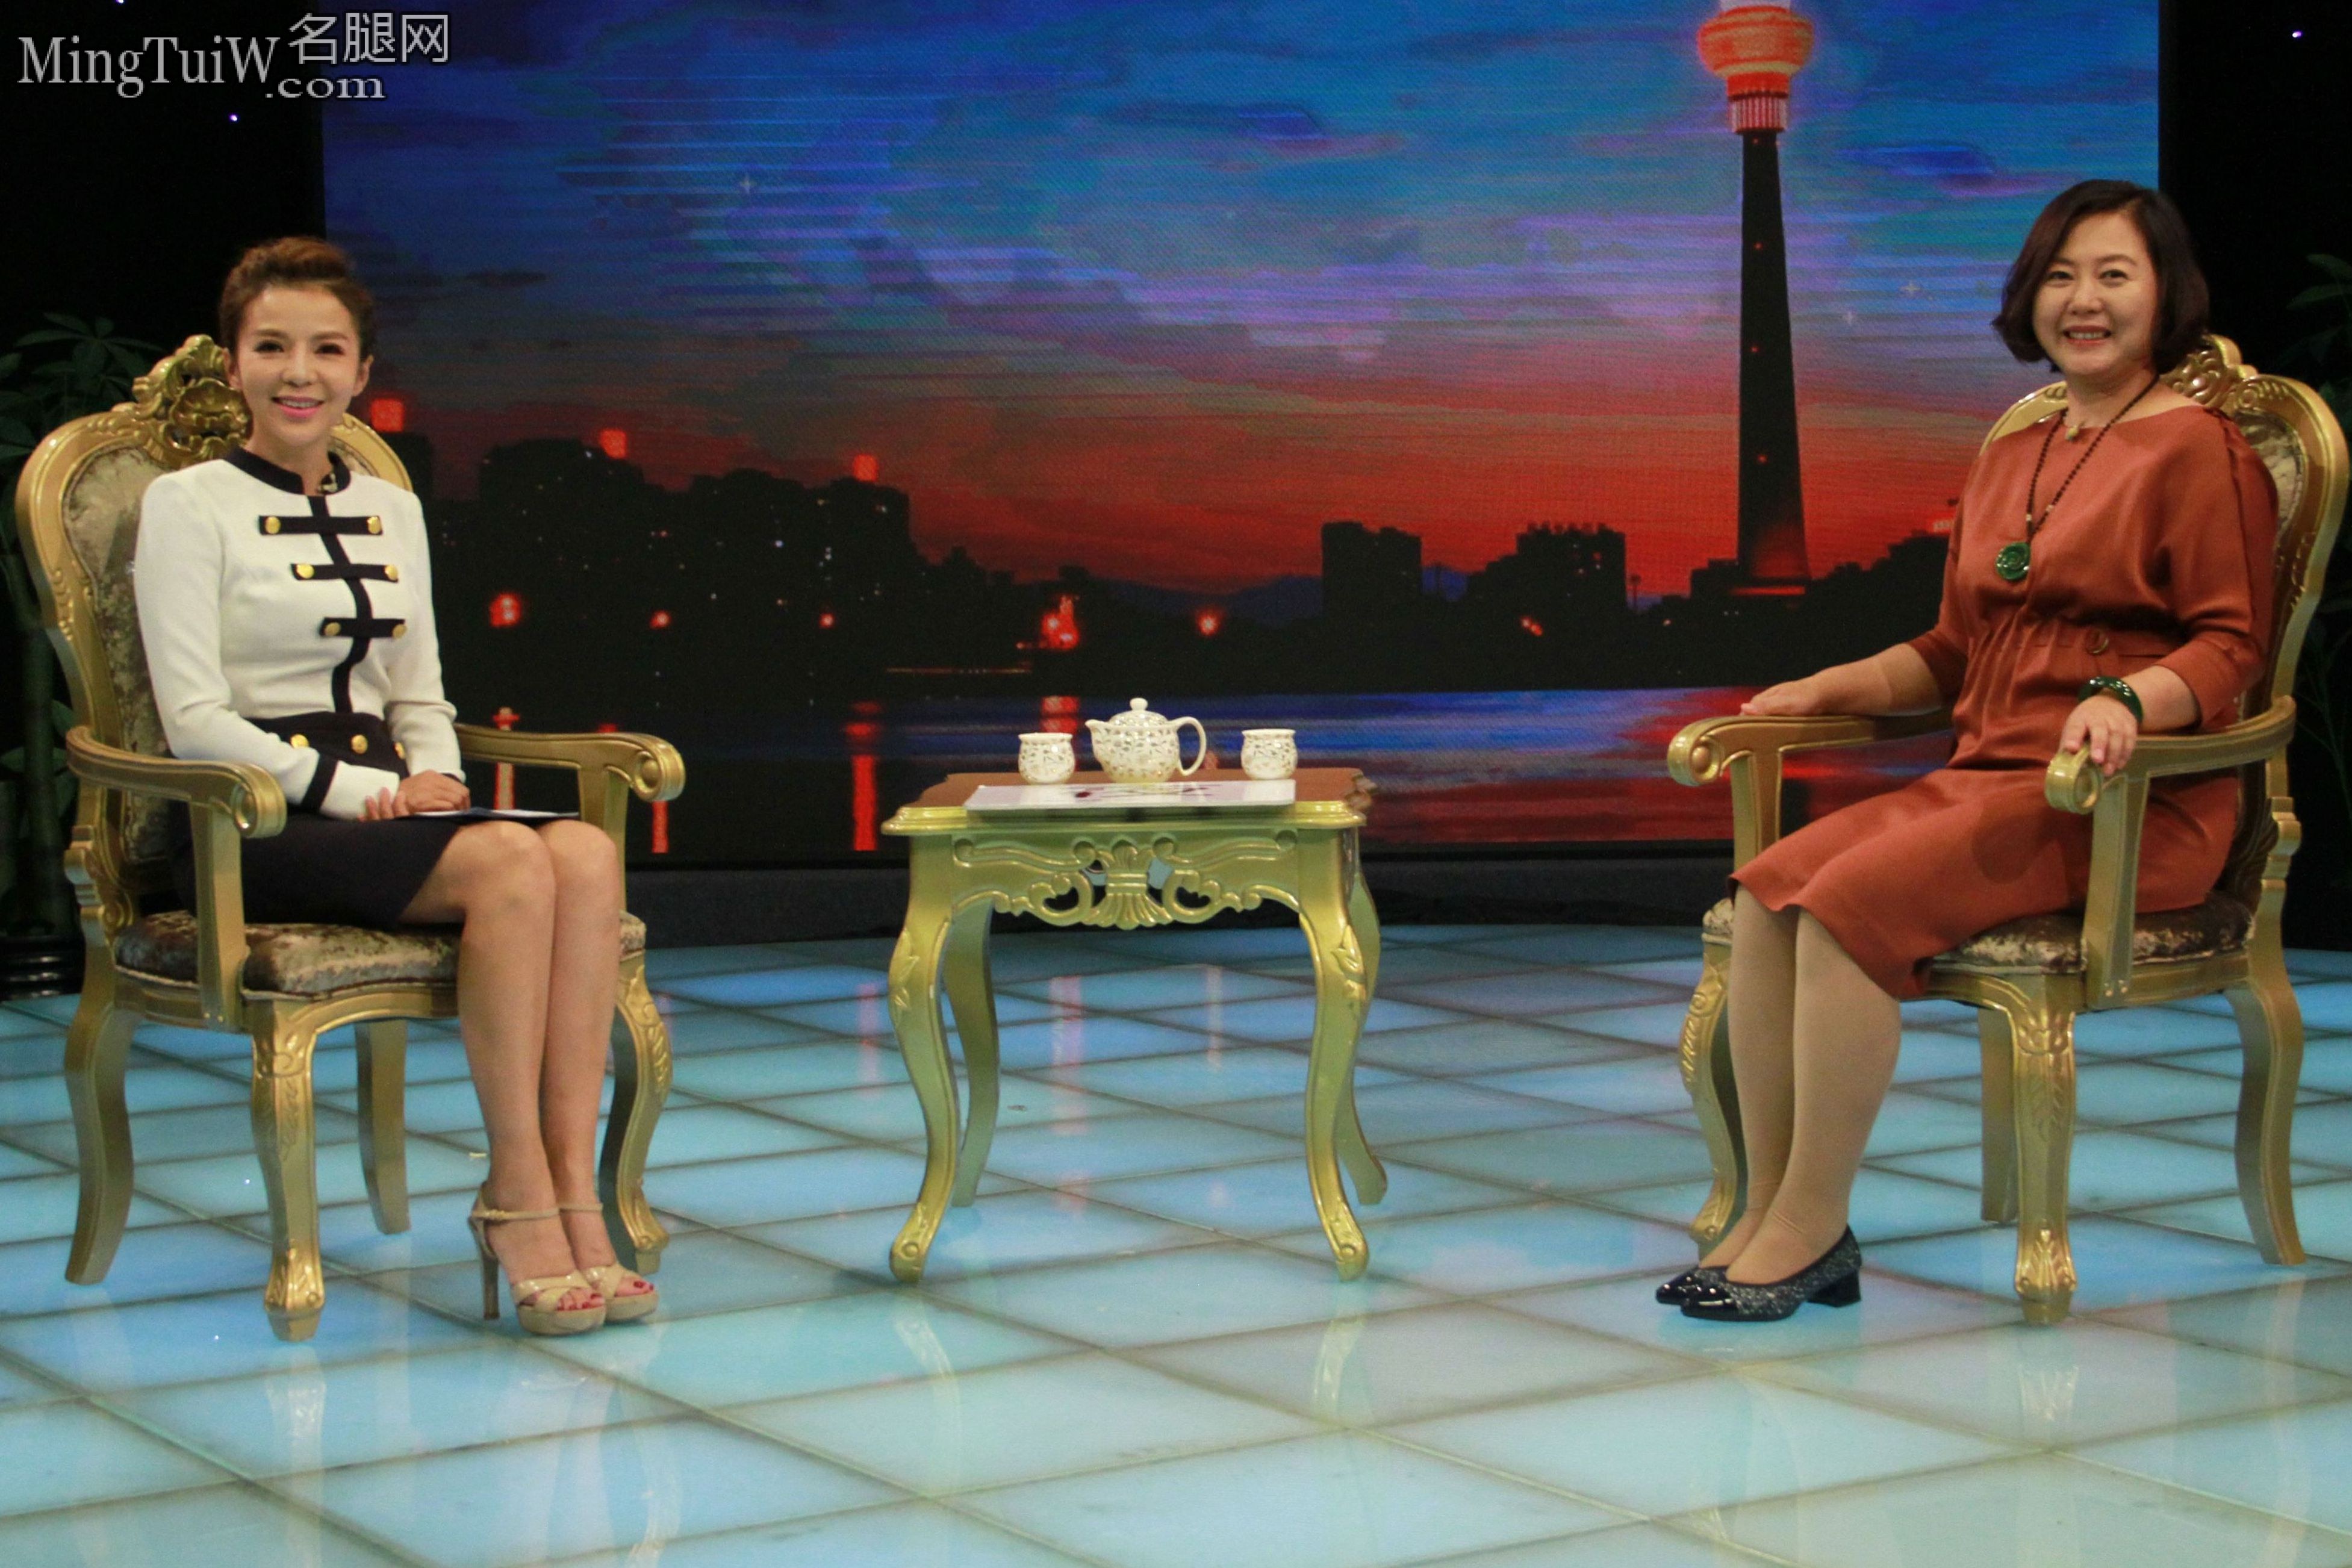 朱迅采访企业家现场秀出她的各种高跟鞋（40/63） - 图片 - 名腿网